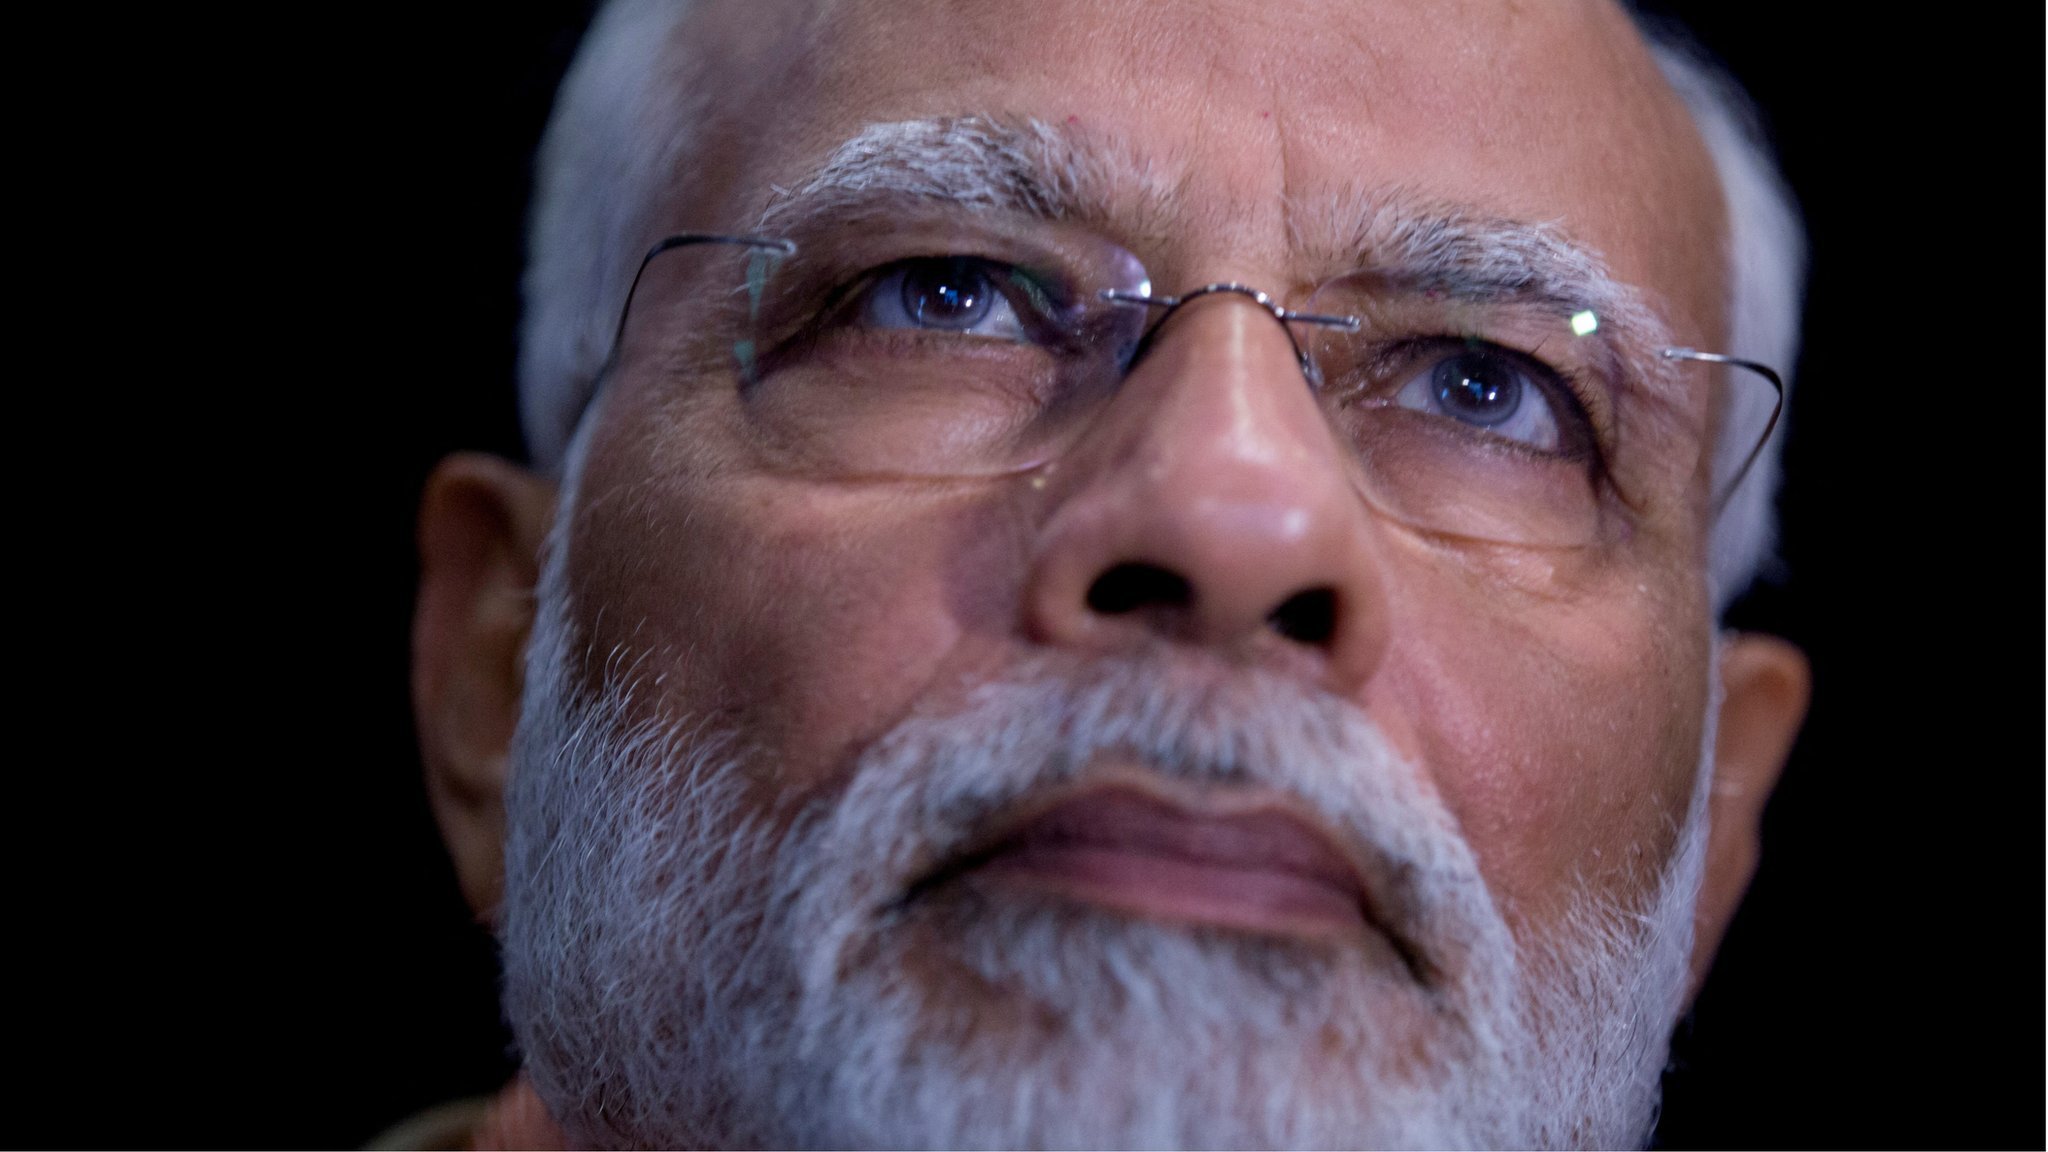 Narendra Modi: India PM aims to make history amid divisive campaign